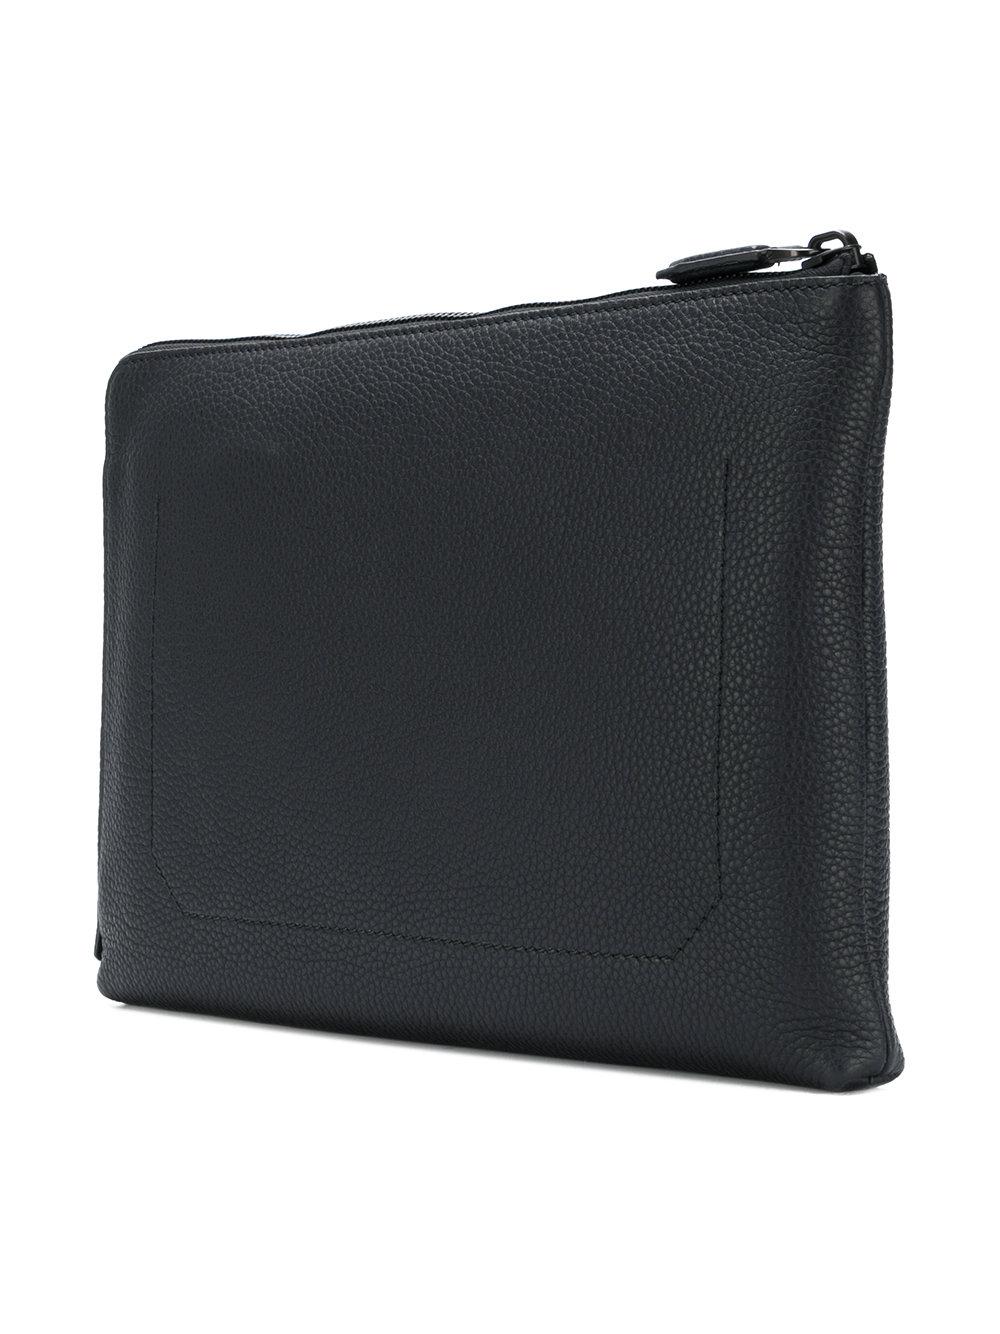 Ferragamo Leather Hand Strap Clutch Bag in Black - Lyst